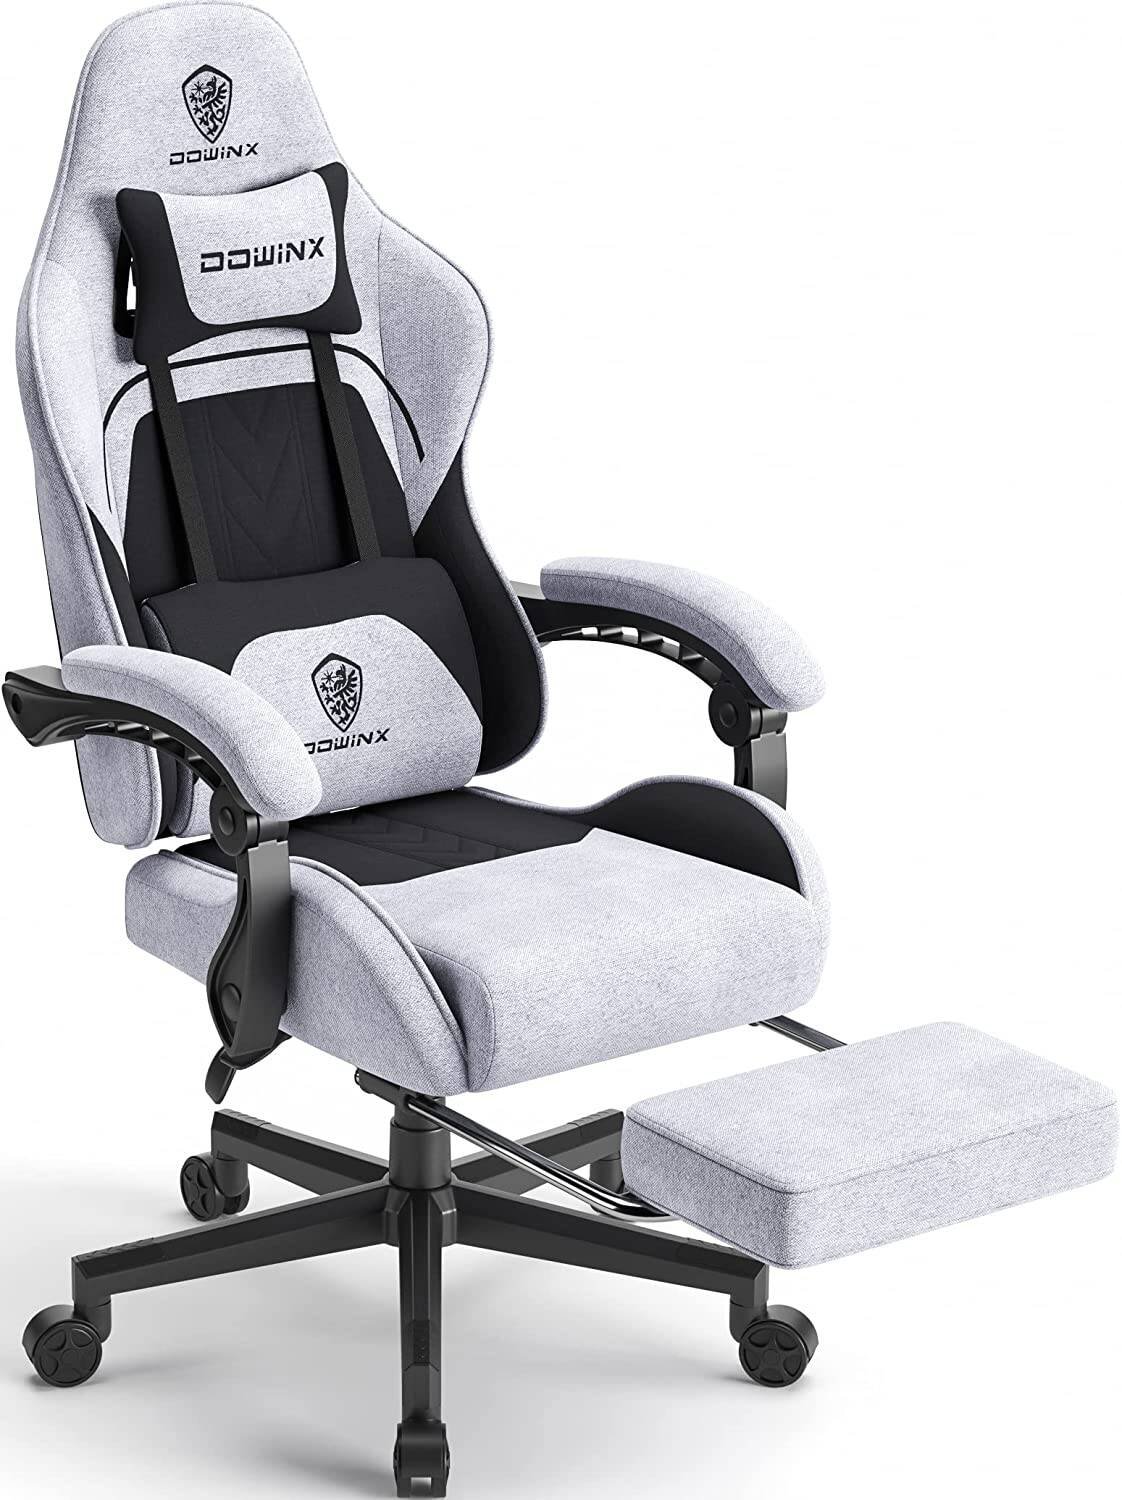 Questa sedia da gaming è apprezzatissima e costo SOLO 137€! - Tom's Hardware